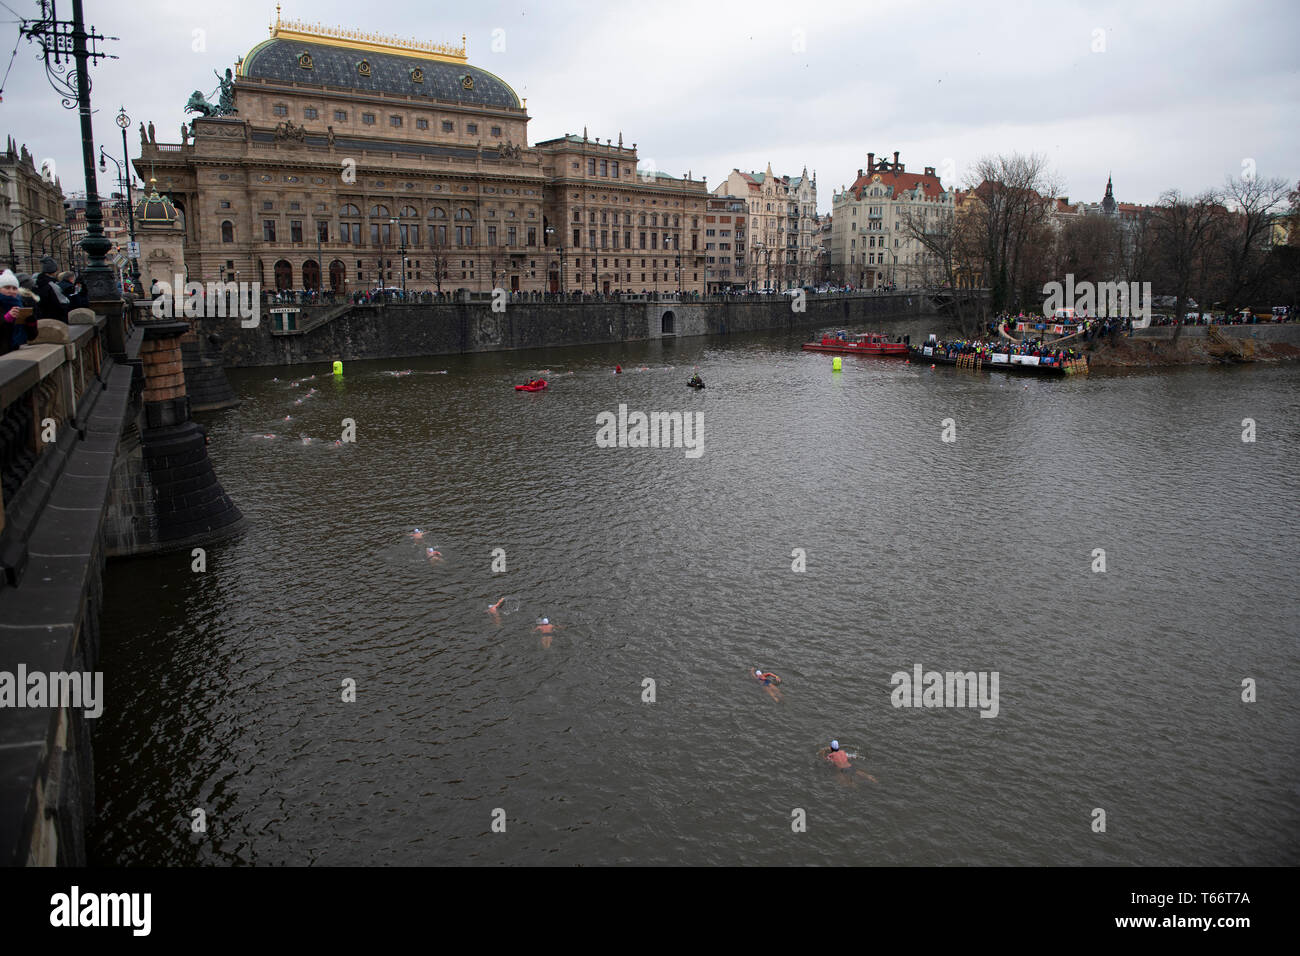 Les nageurs font la course sur la Vltava par le Théâtre national depuis le pont de la Légion, Prague, République tchèque Banque D'Images